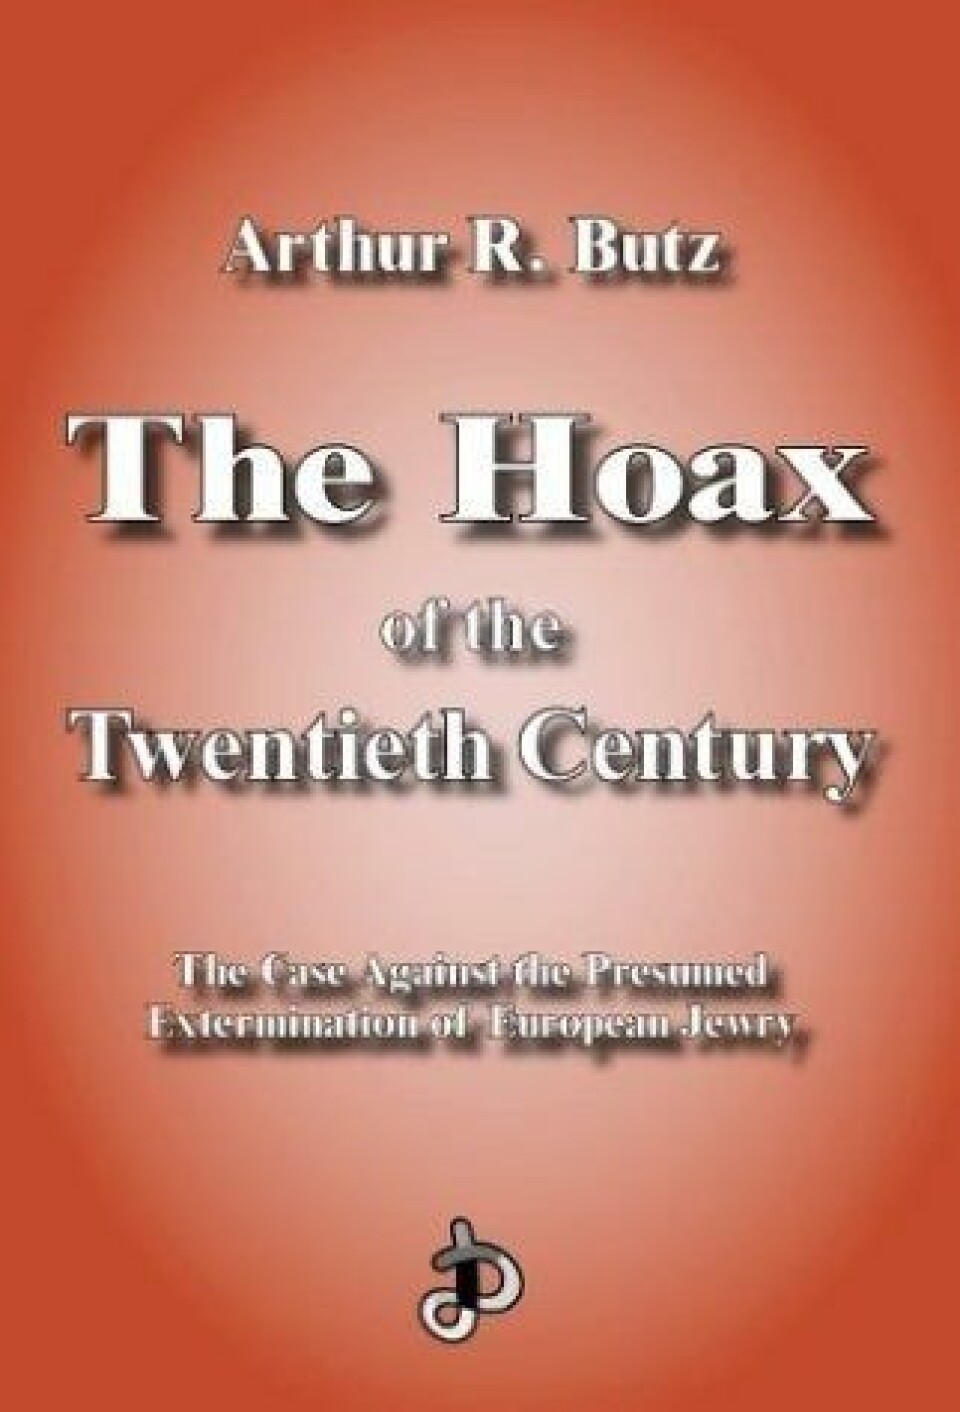 'The Hoax of the Twentieth Century av Arthur Butz, en bok som påstår at Holocaust er det tyvende århundrets største bløff.'